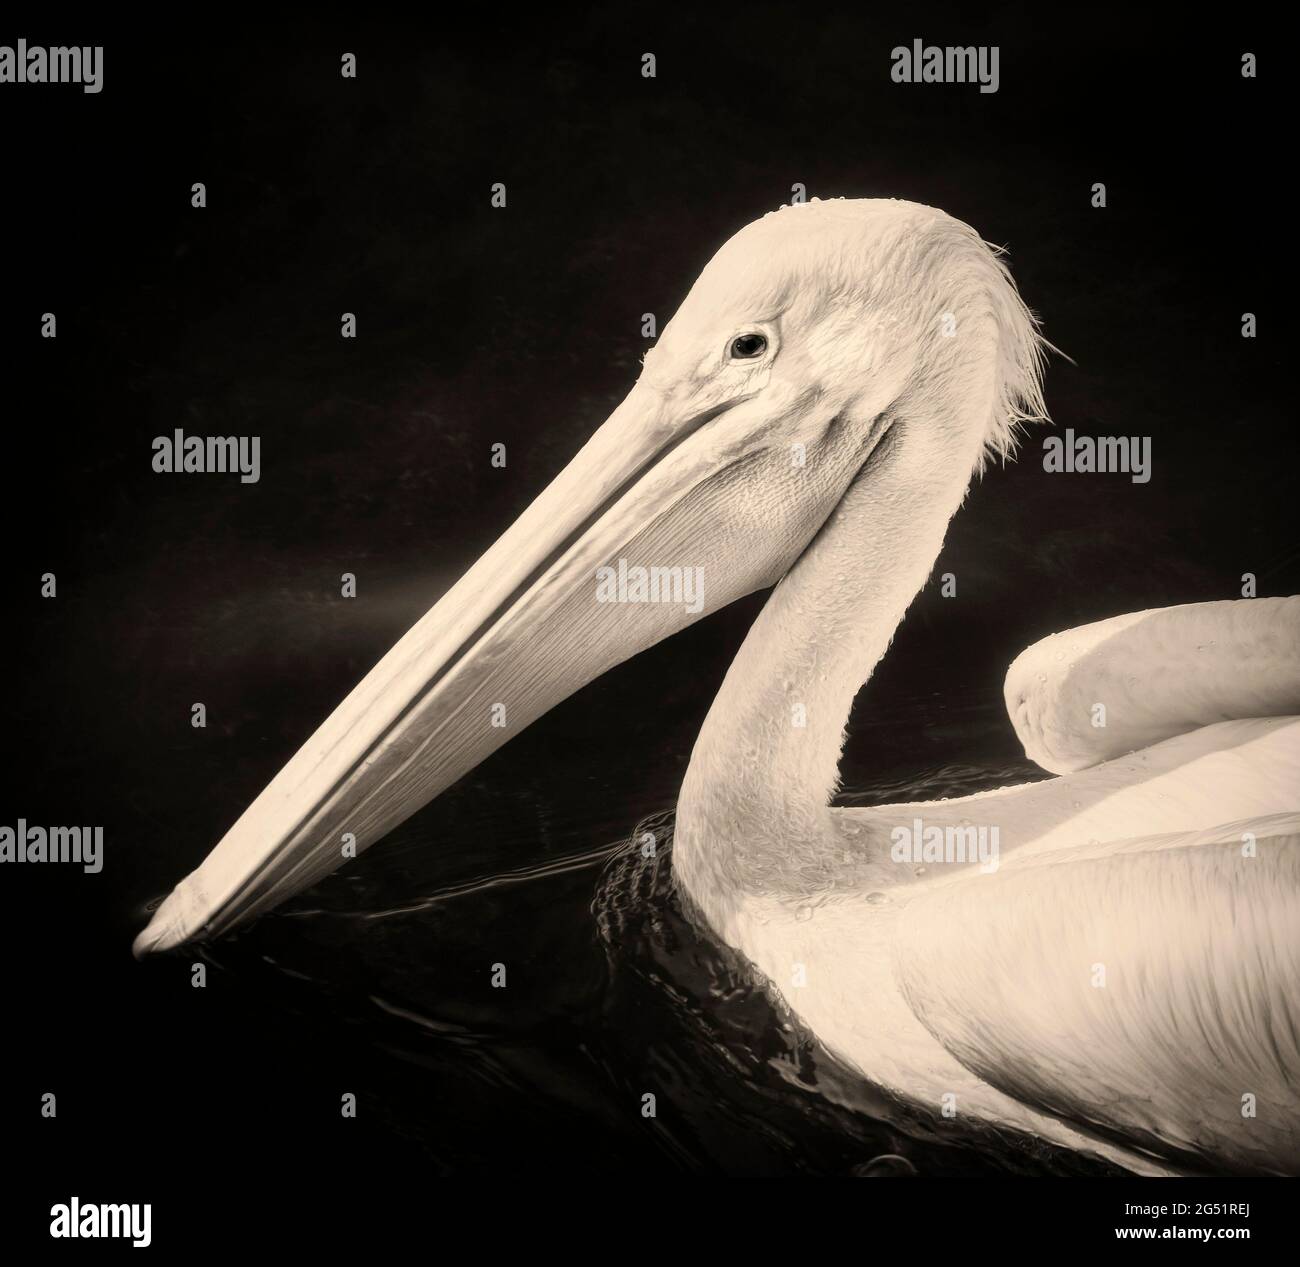 Kopfschuss des Pelikans in Schwarz und Weiß Stockfoto